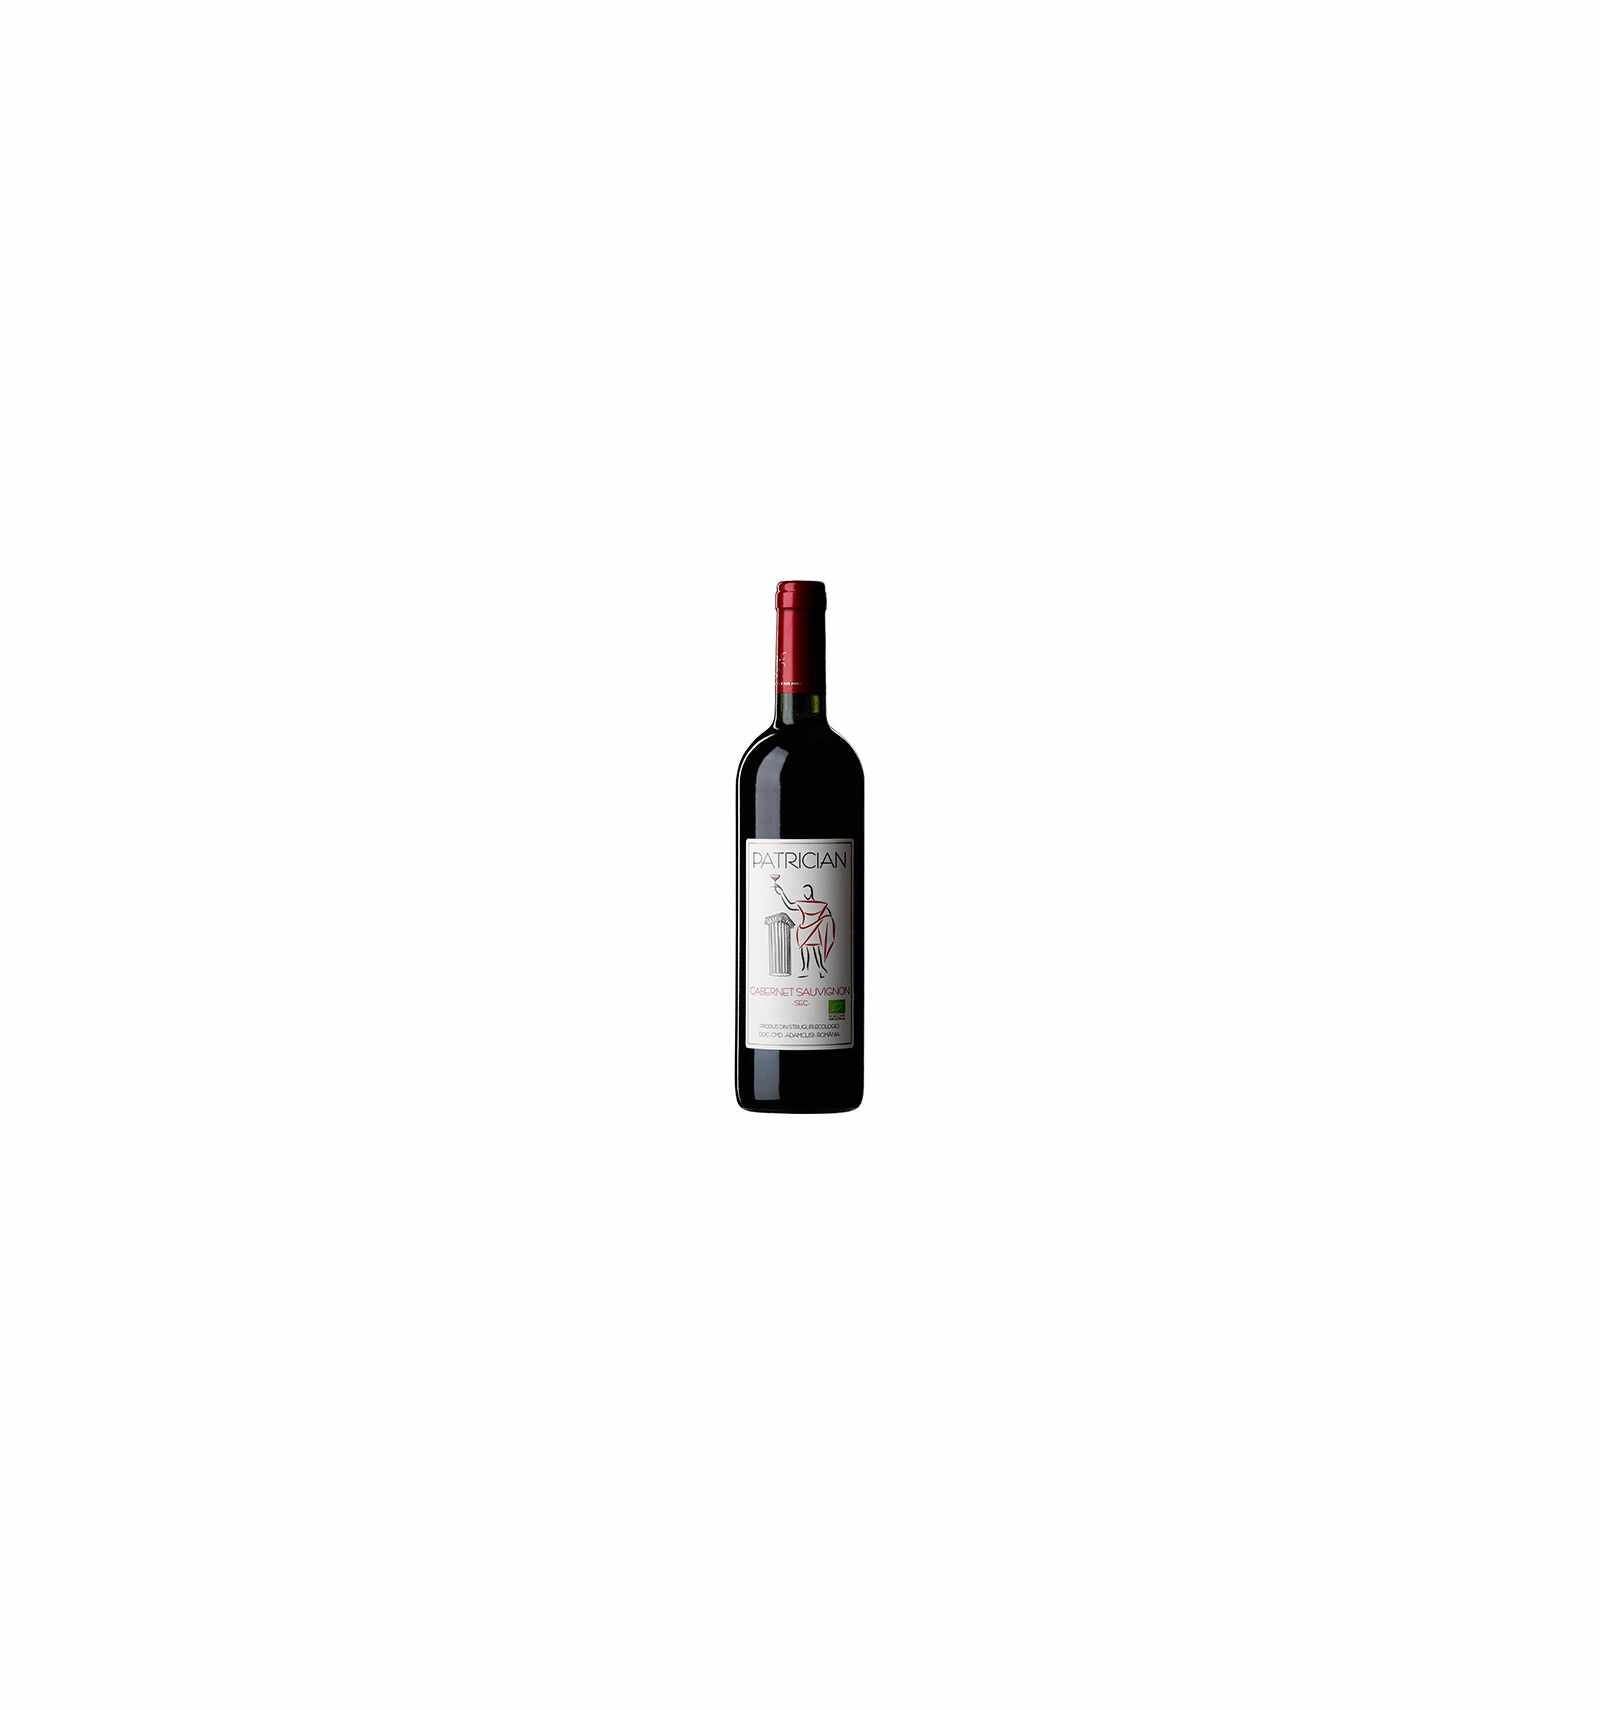 Vin rosu sec, Cabernet Sauvignon, Patrician Adamclisi, 0.75L, 13% alc., Romania